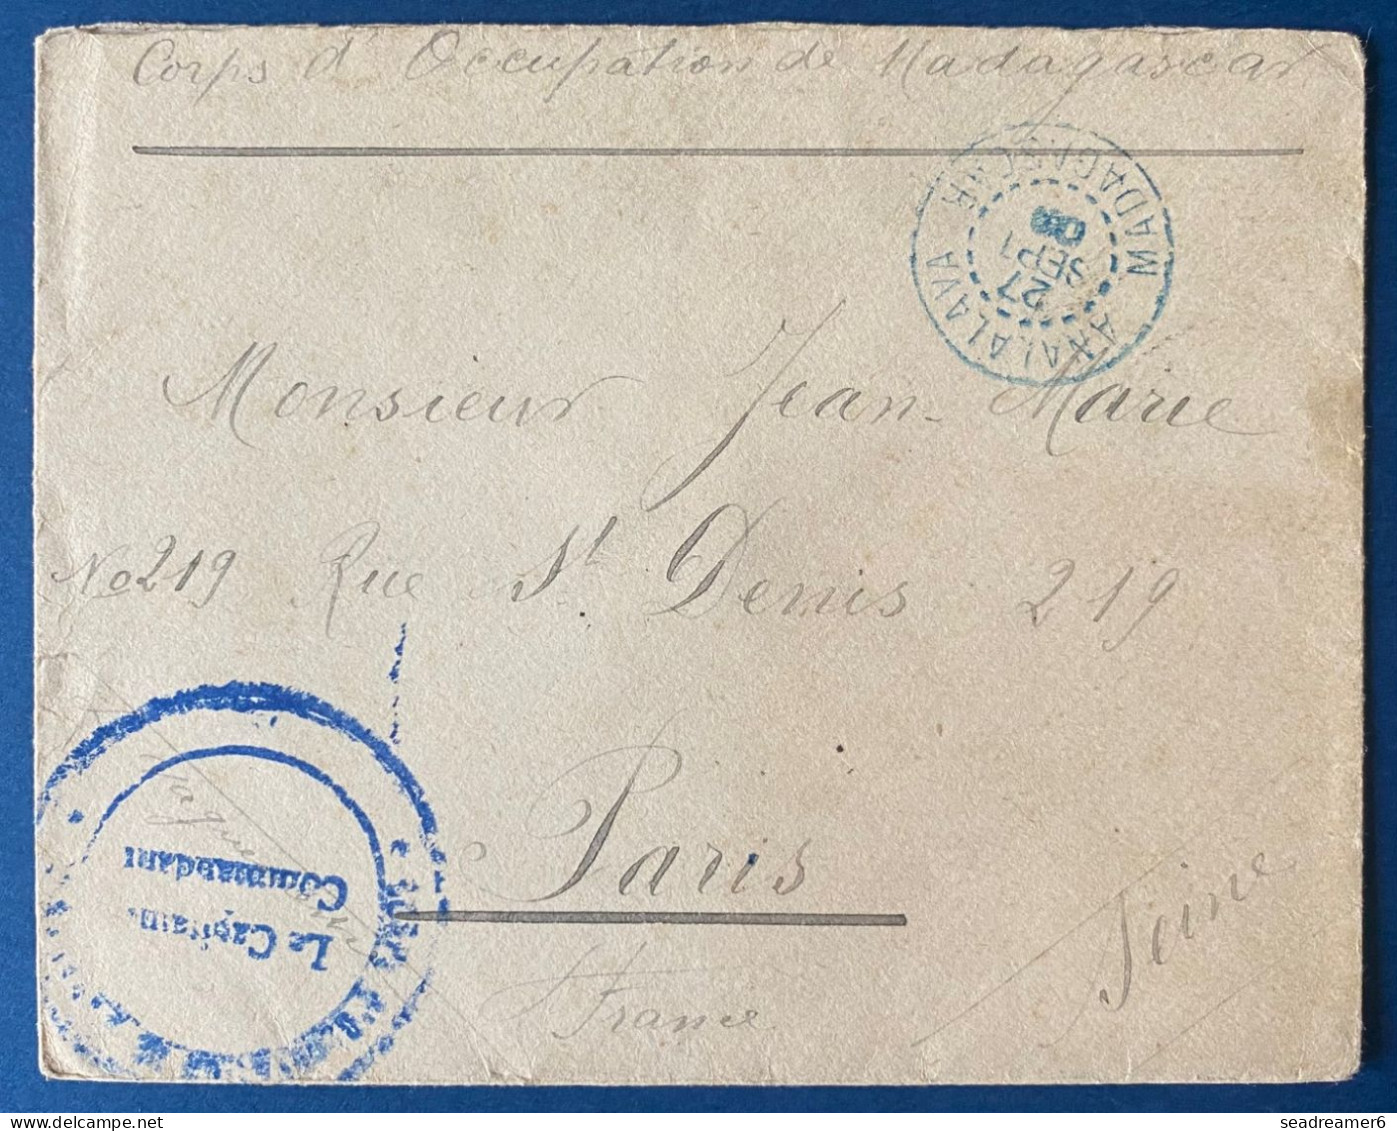 France Colonies Lettre Corps Expeditionnaire De Madagascar Dateur Bleu D'ANALALAVA De 1903 Pour PARIS, Au Dos Transit - Covers & Documents